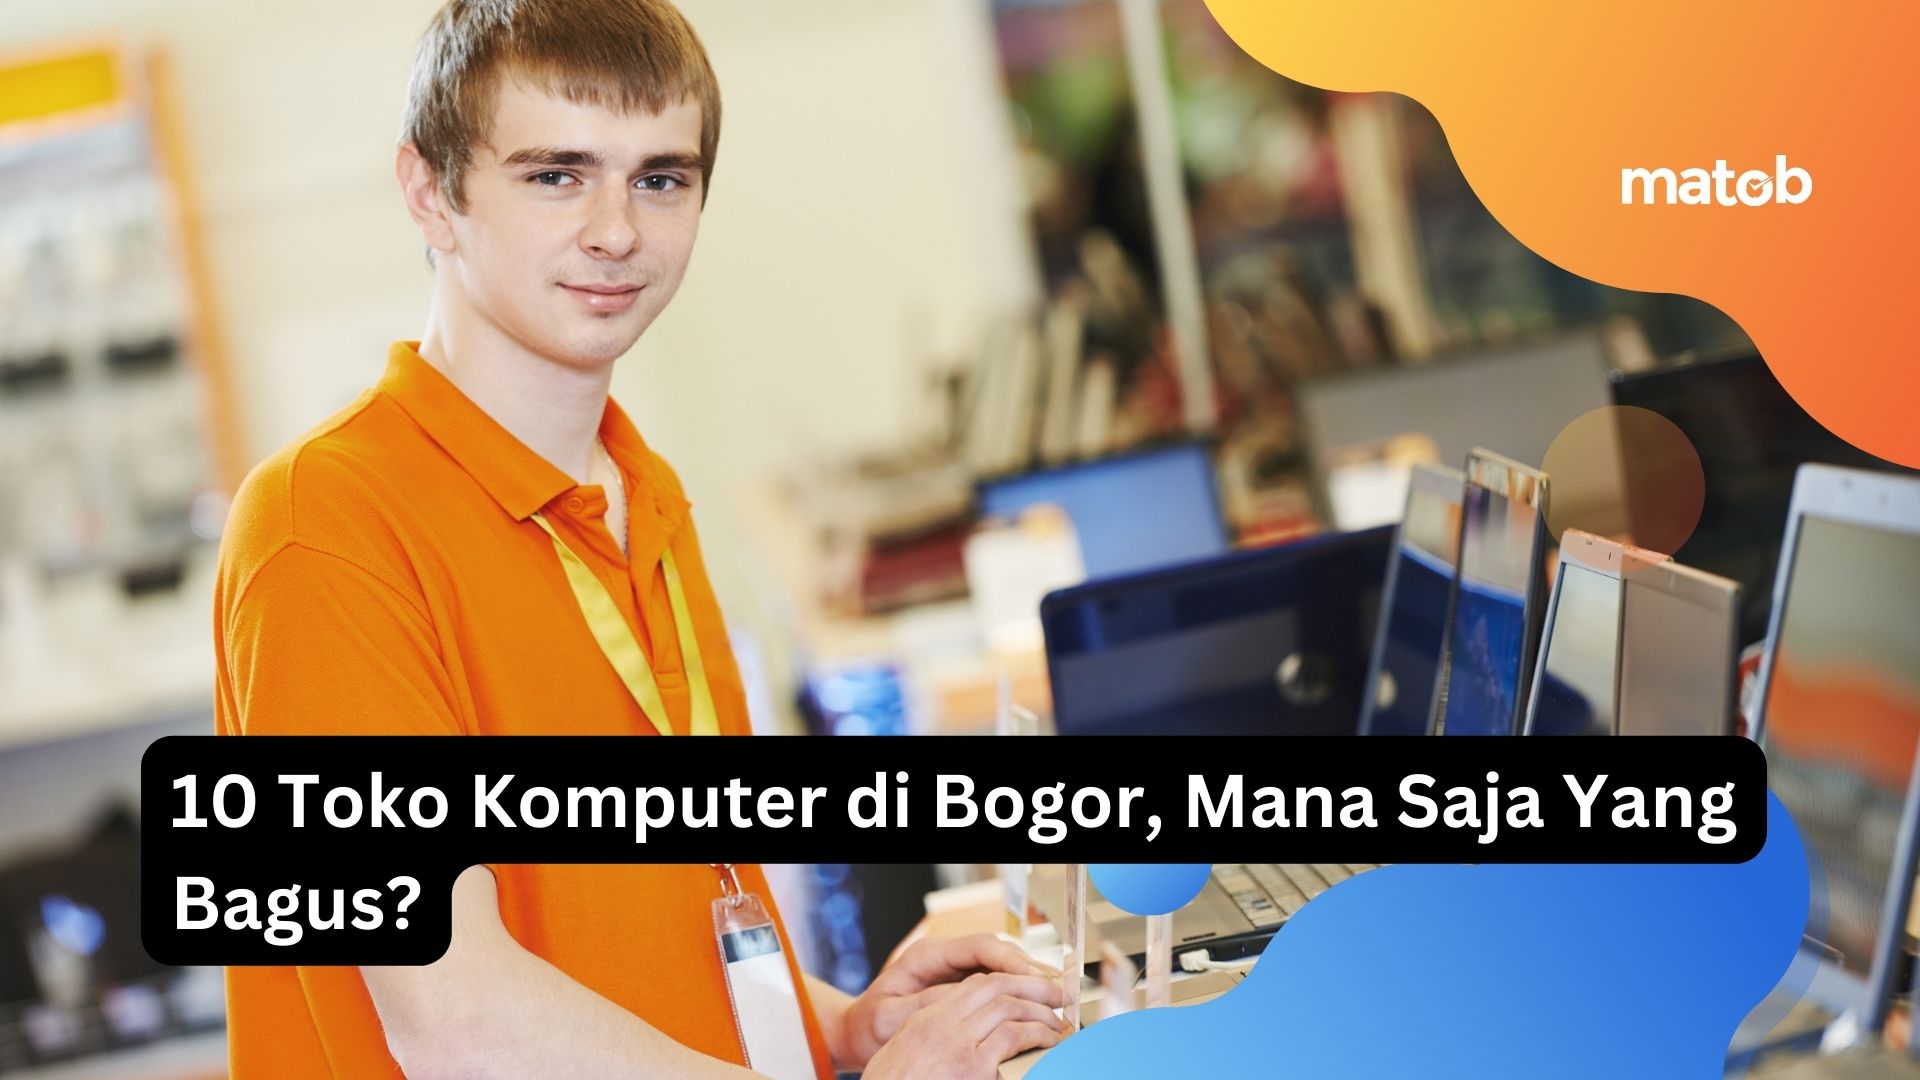 10 Toko Komputer di Bogor, Mana Saja Yang Bagus?